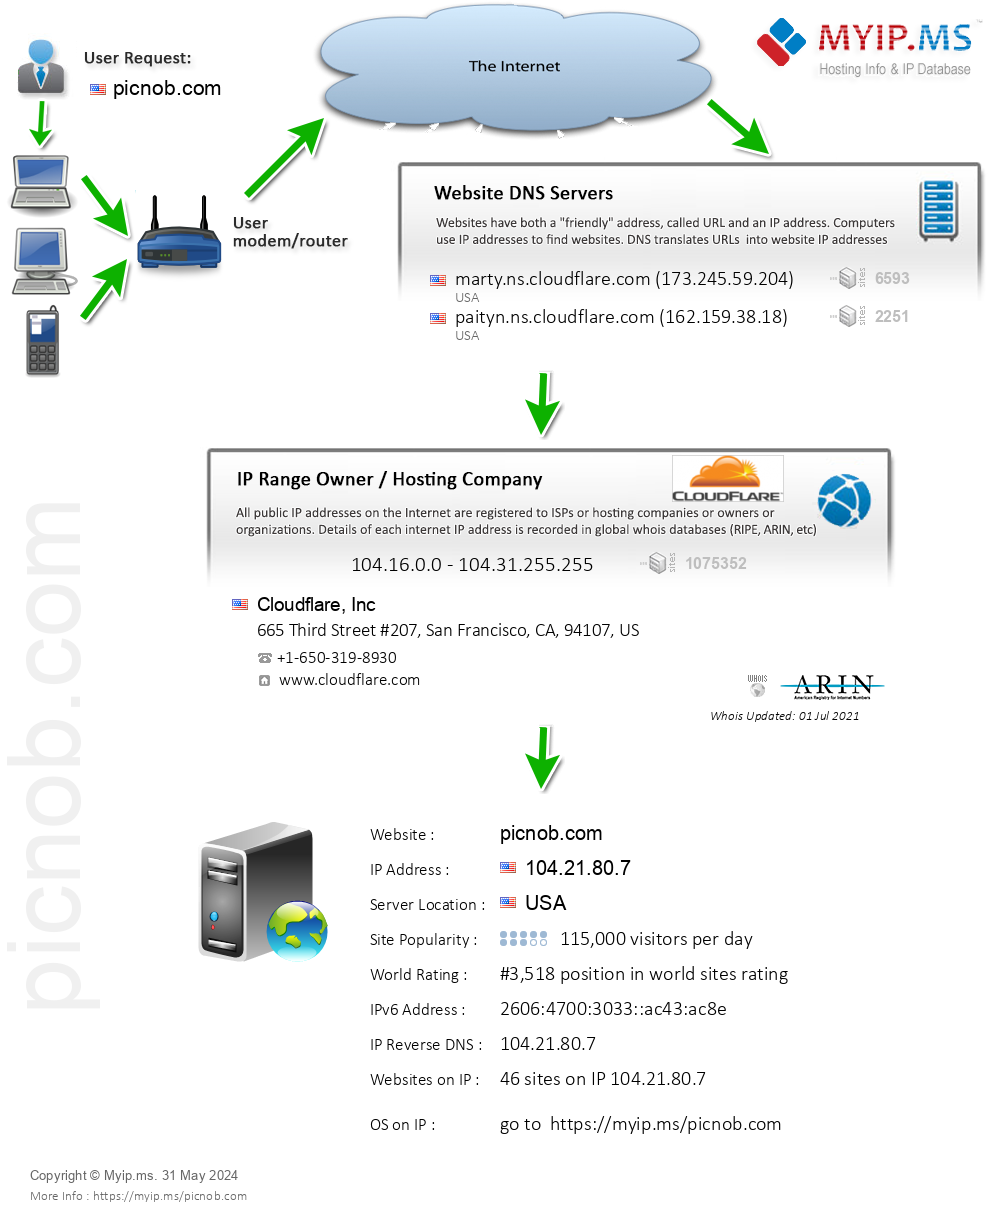 Picnob.com - Website Hosting Visual IP Diagram